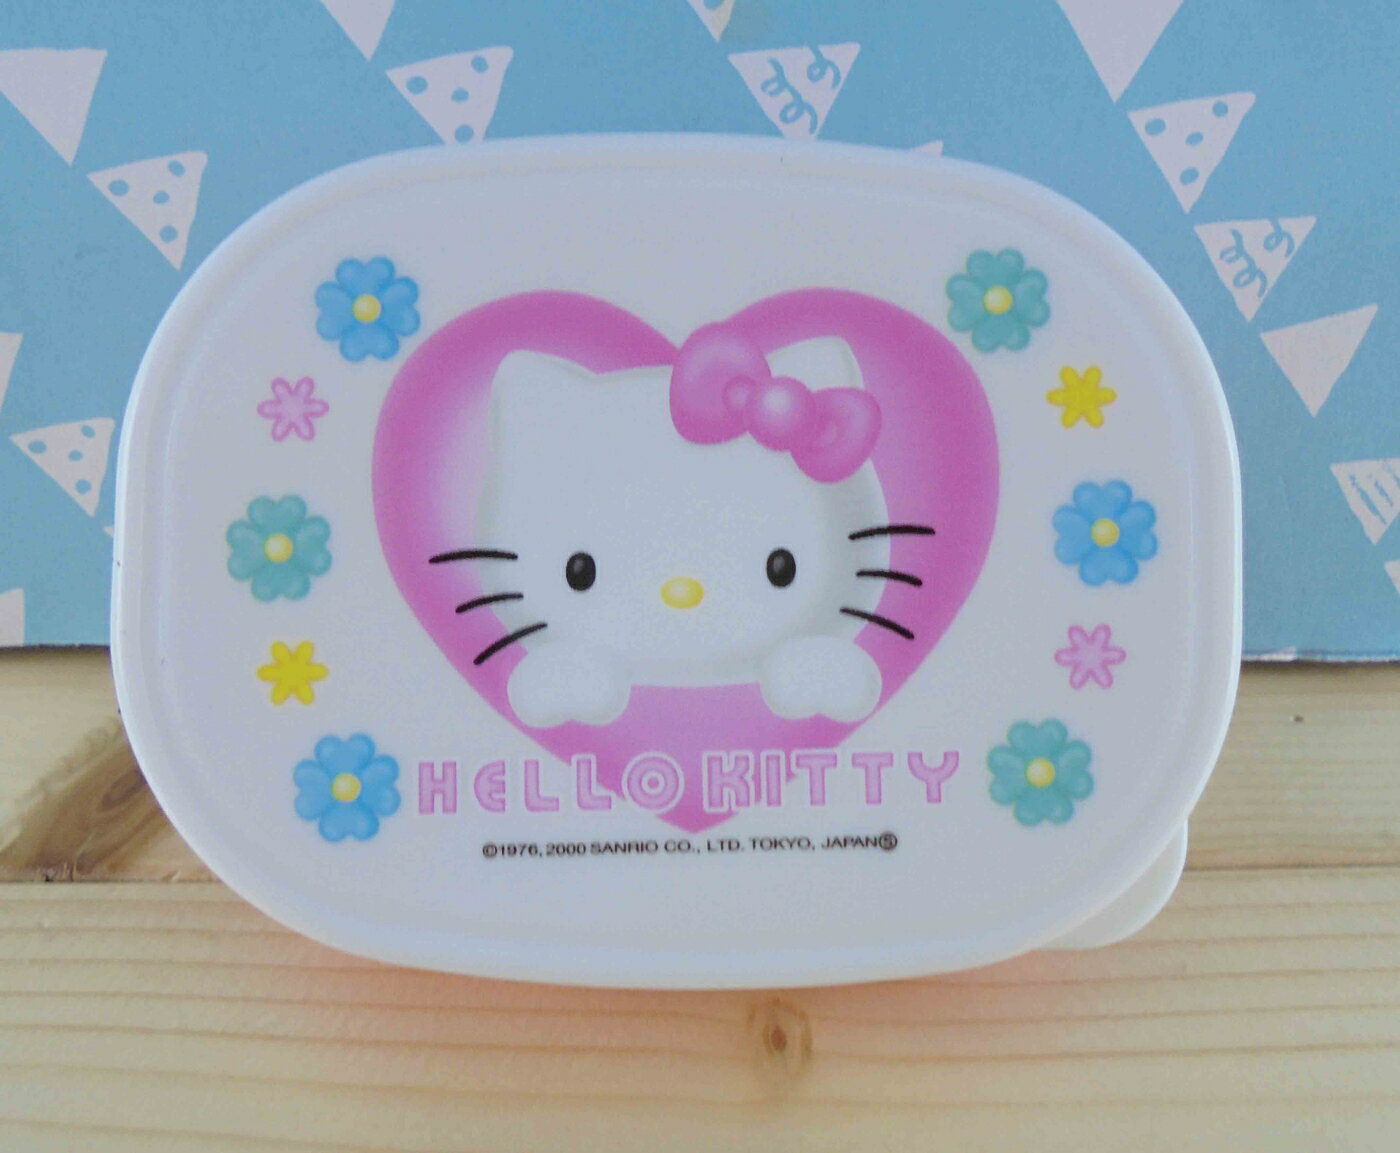 【震撼精品百貨】Hello Kitty 凱蒂貓 KITTY空盒-粉花圖案 震撼日式精品百貨